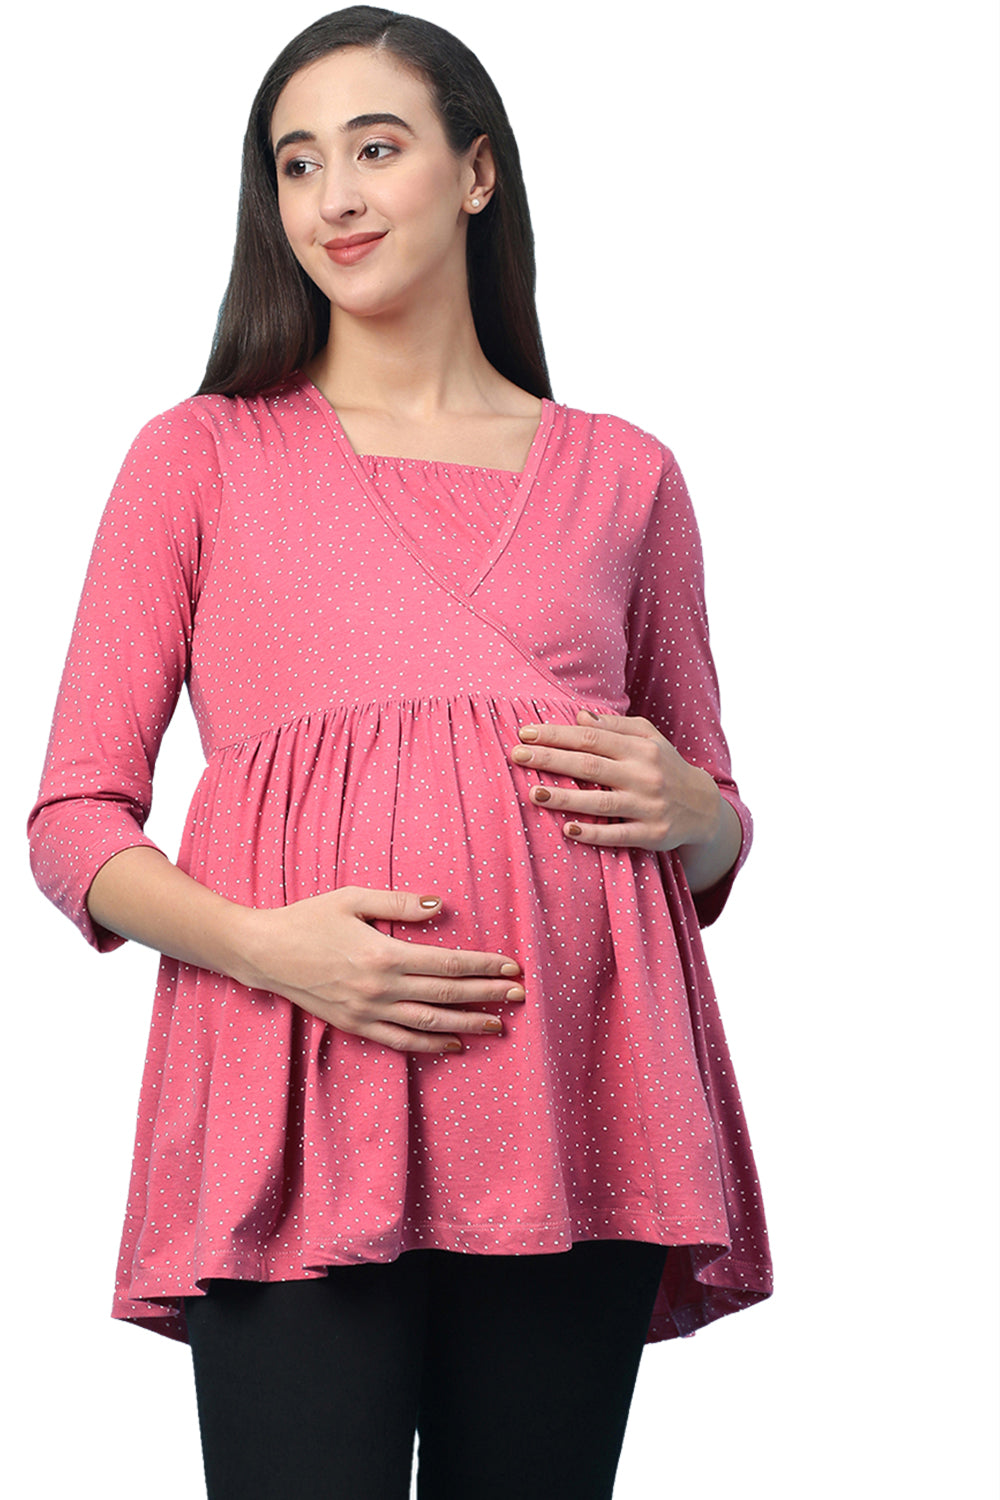 Organic Healthy Full Sleeves Maternity Top_ISML007-Desert Rose